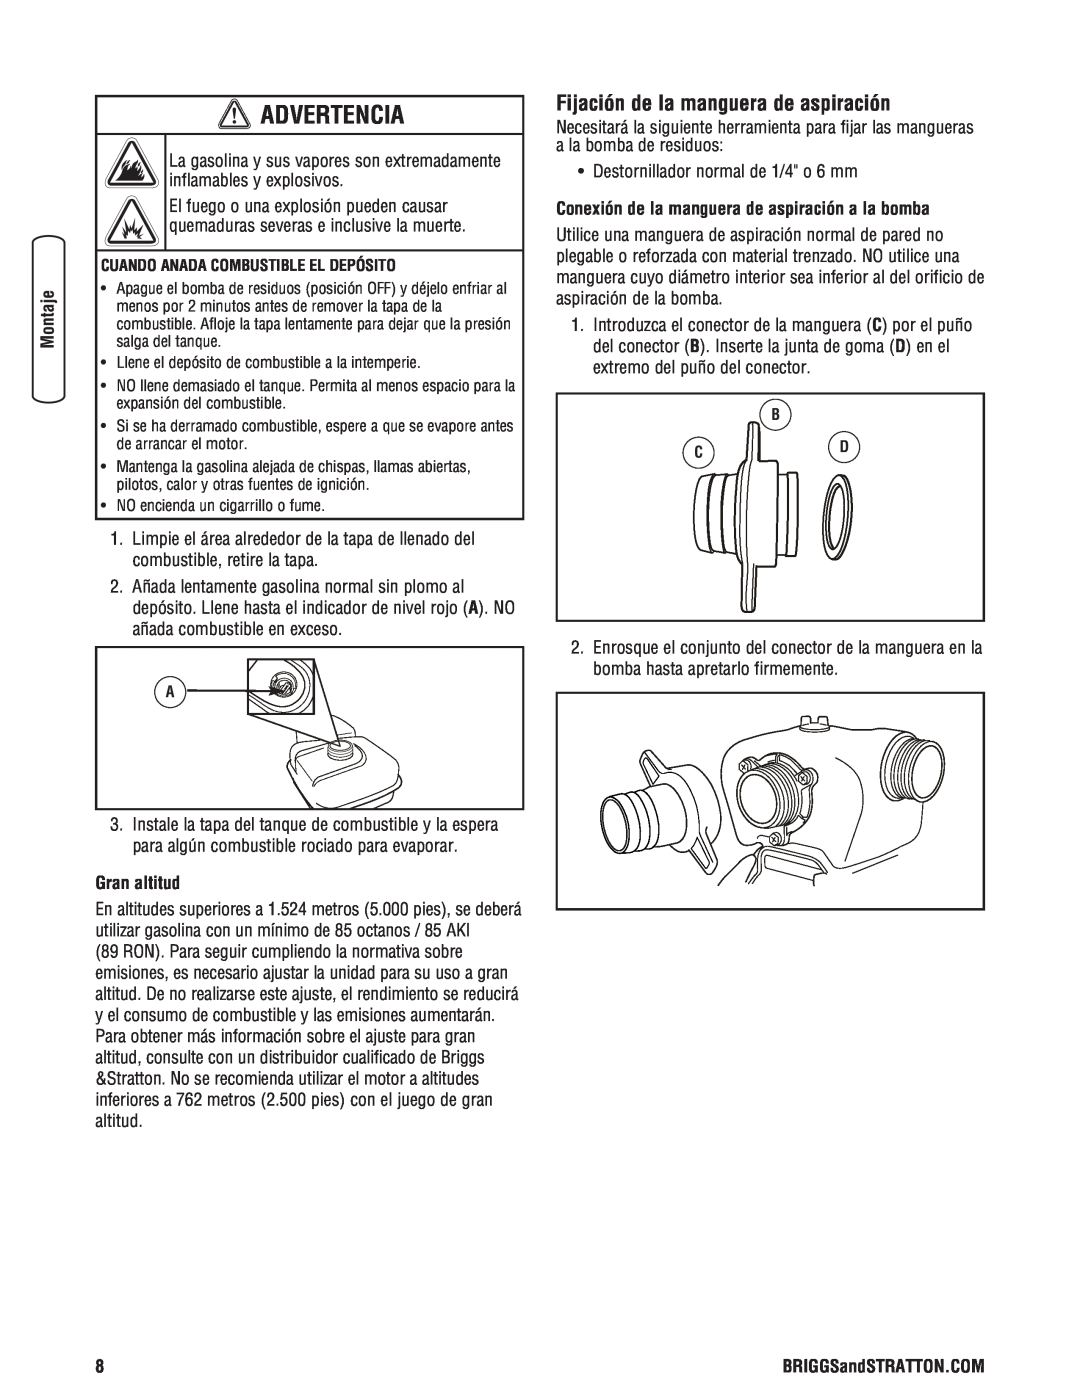 Briggs & Stratton 205378GS manual Fijación de la manguera de aspiración, Gran altitud, Advertencia 